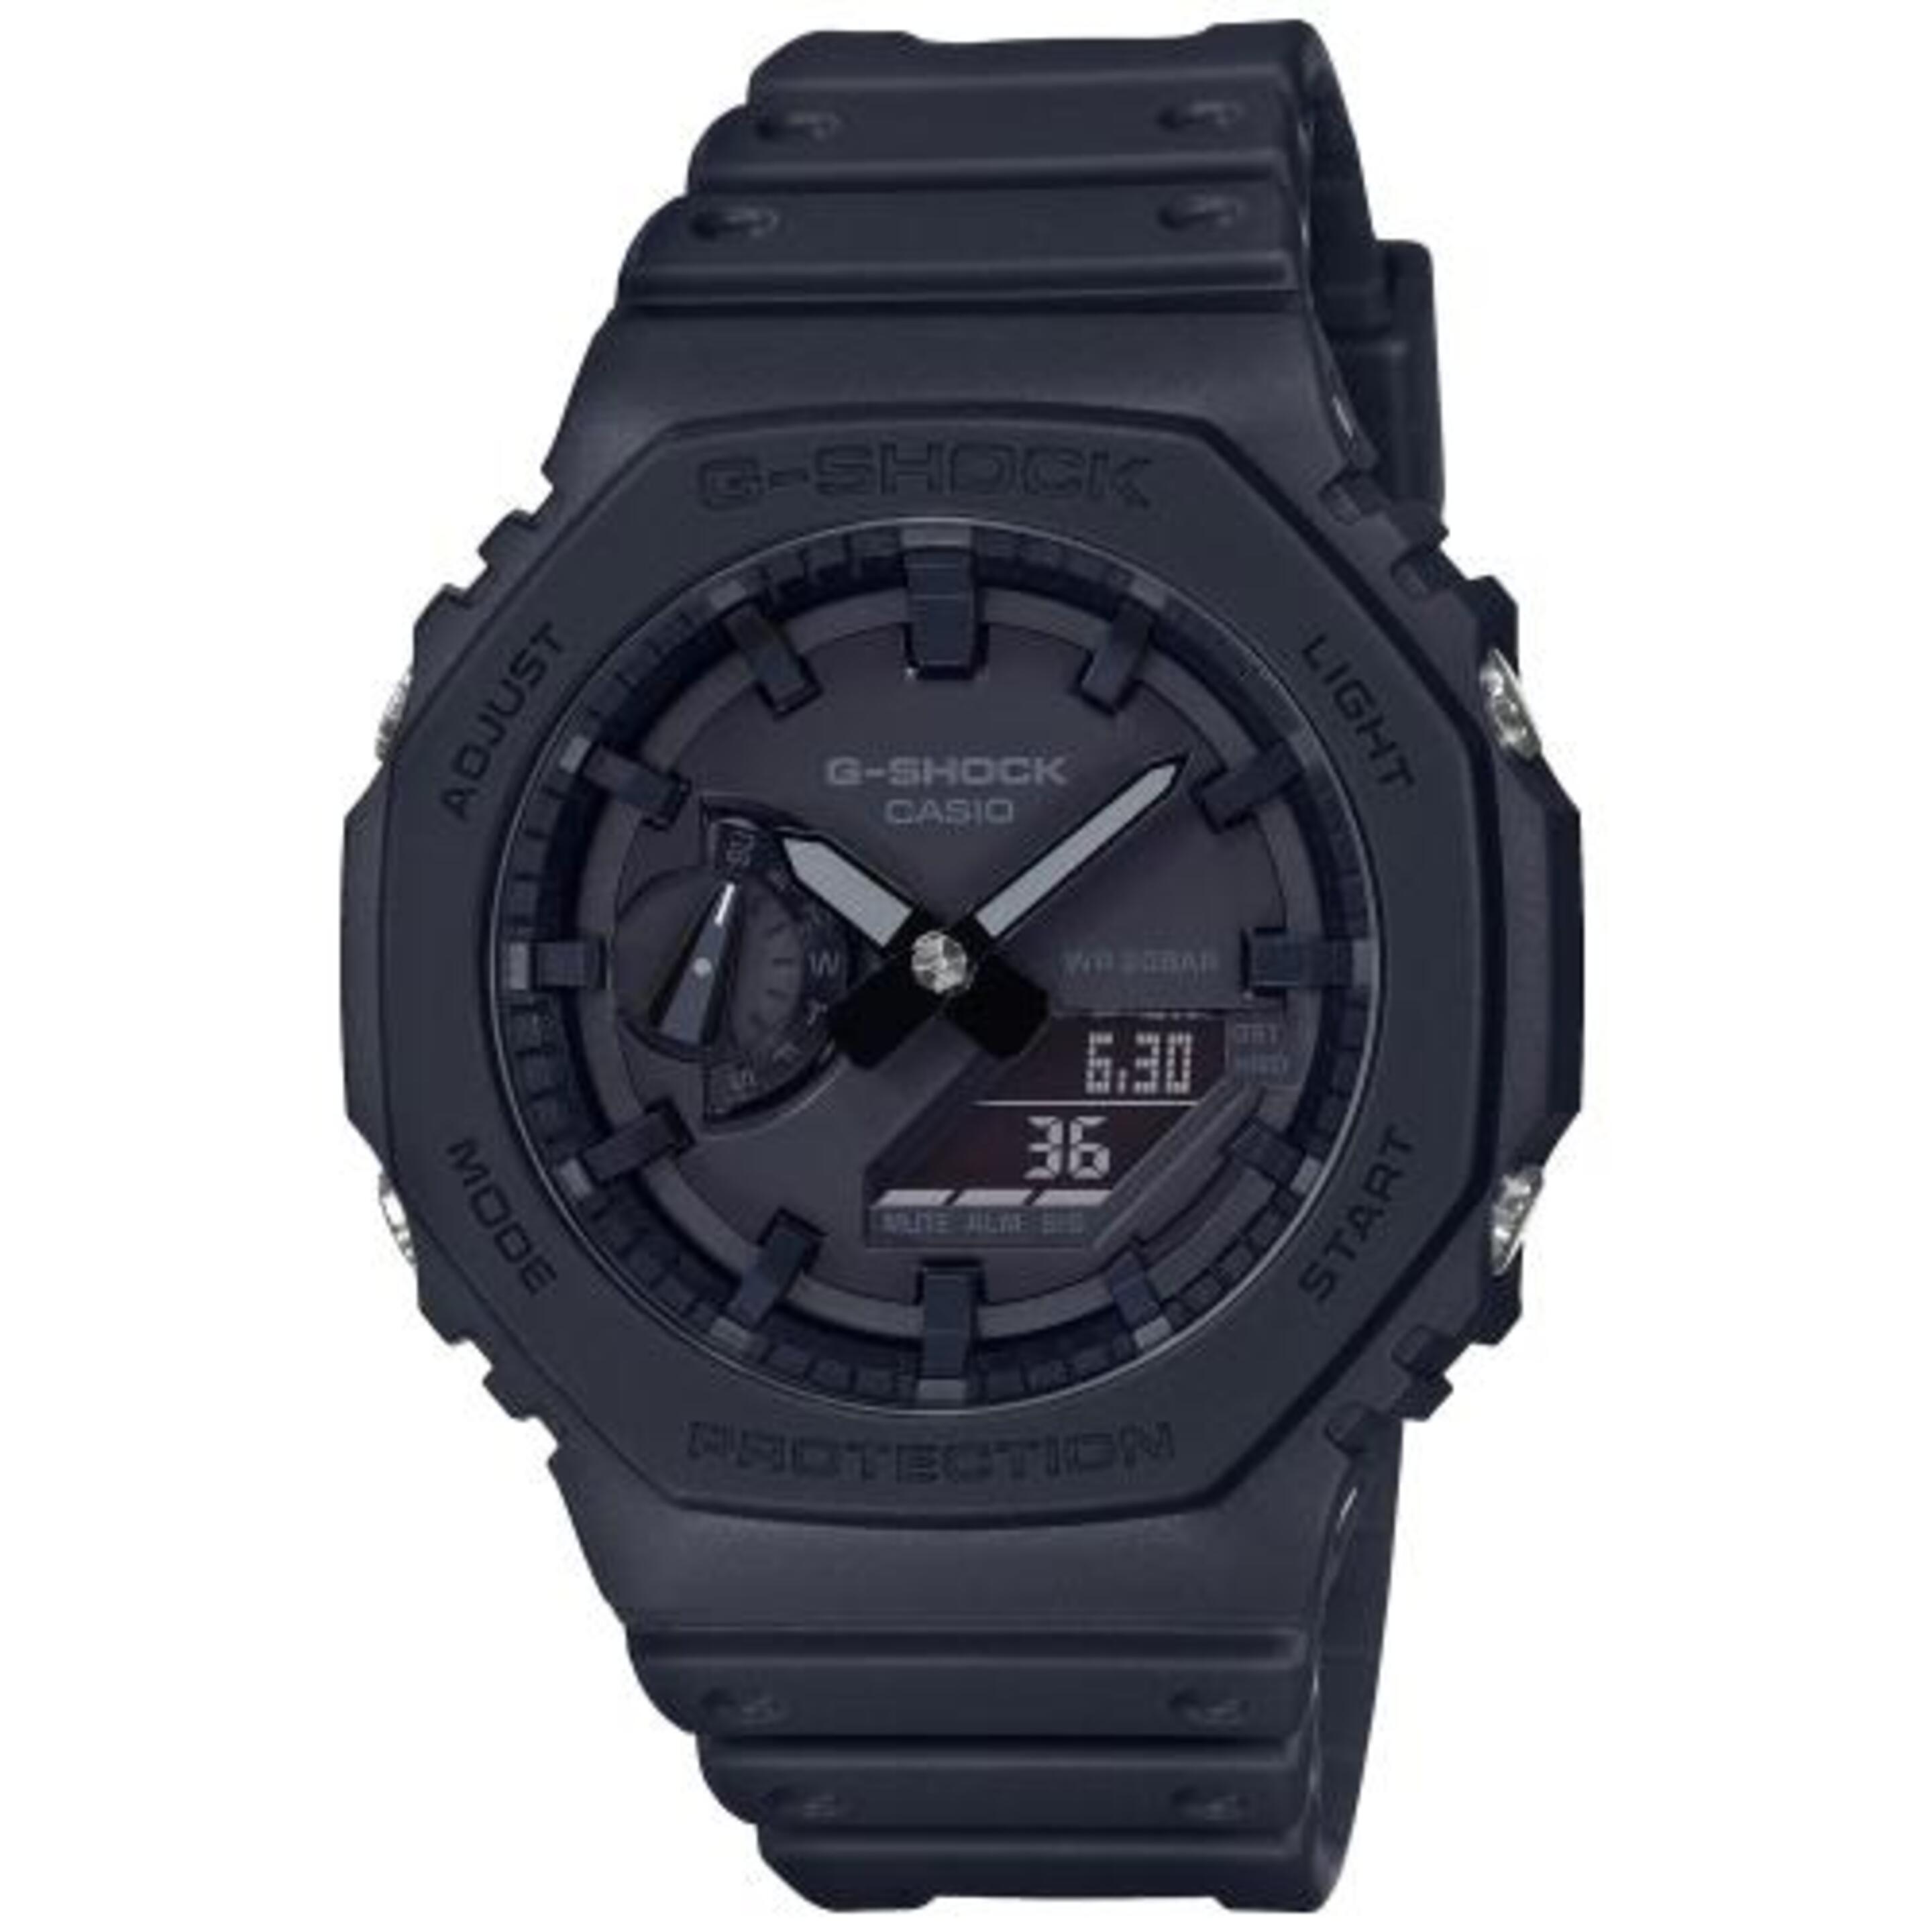 Reloj Casio G-shock Ga-2100-1a1er - Reloj Deportivo  MKP